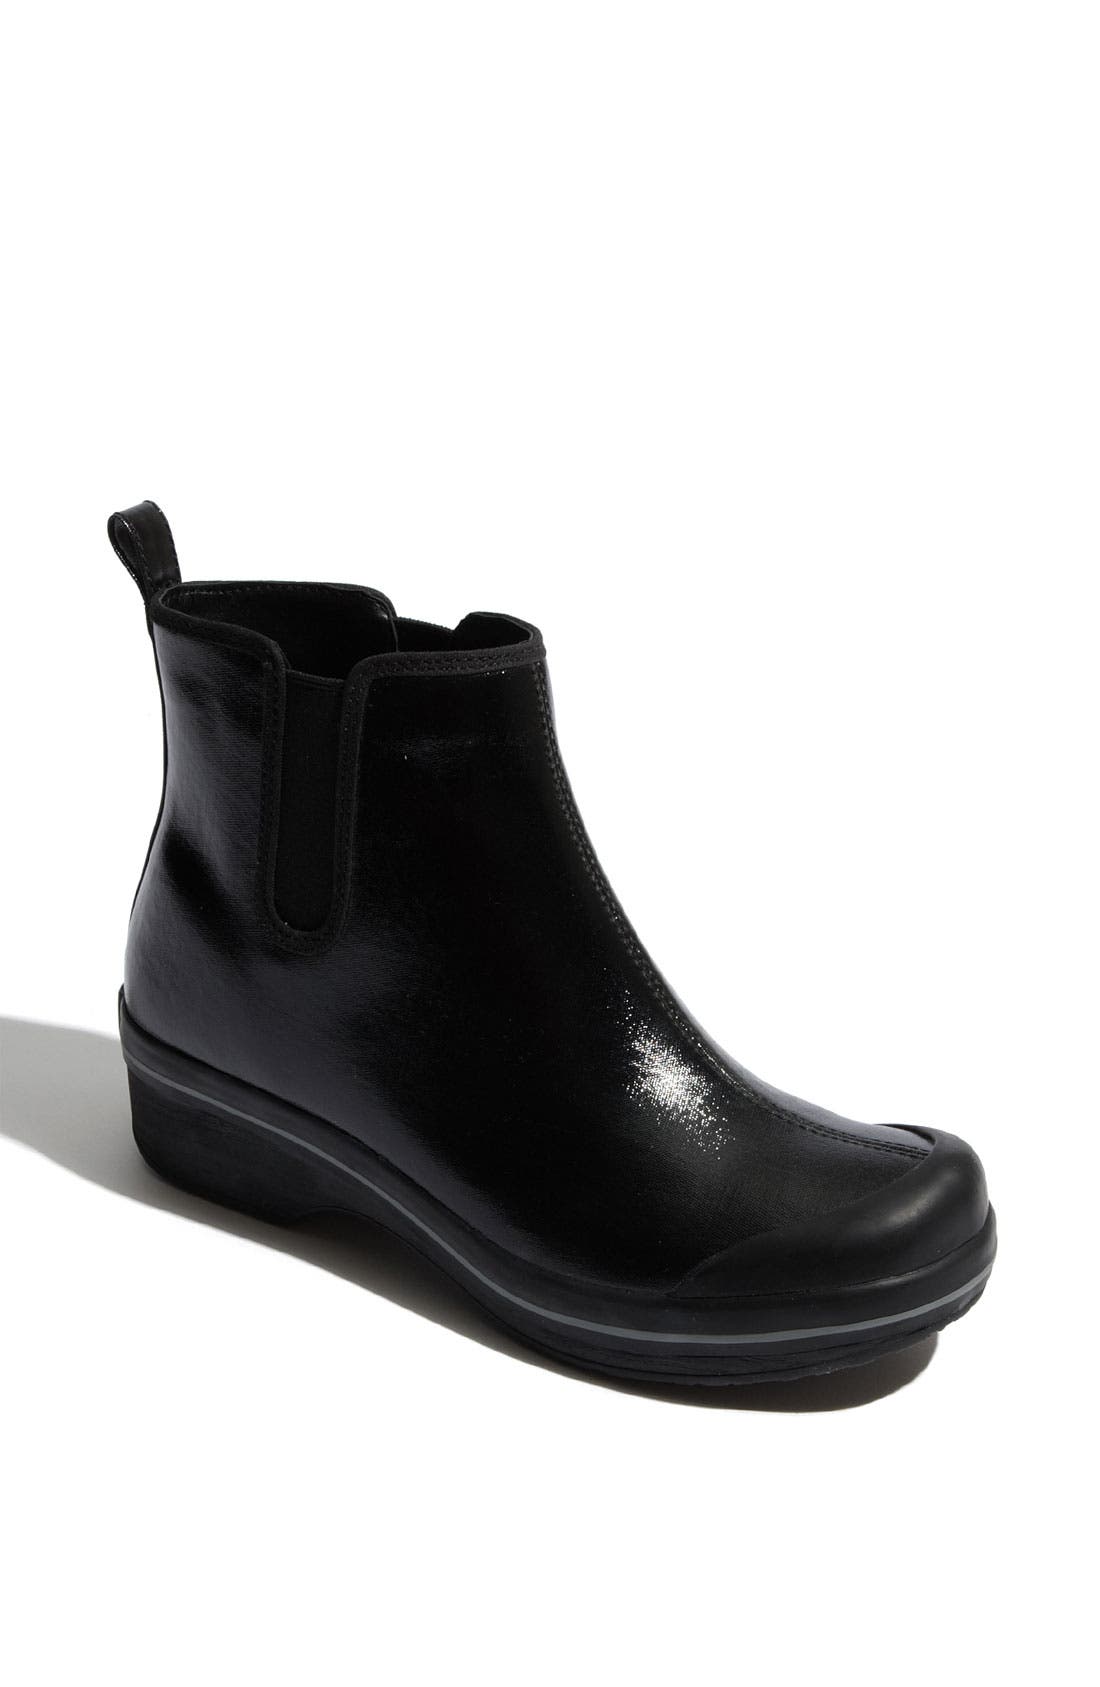 dansko women's rain boots